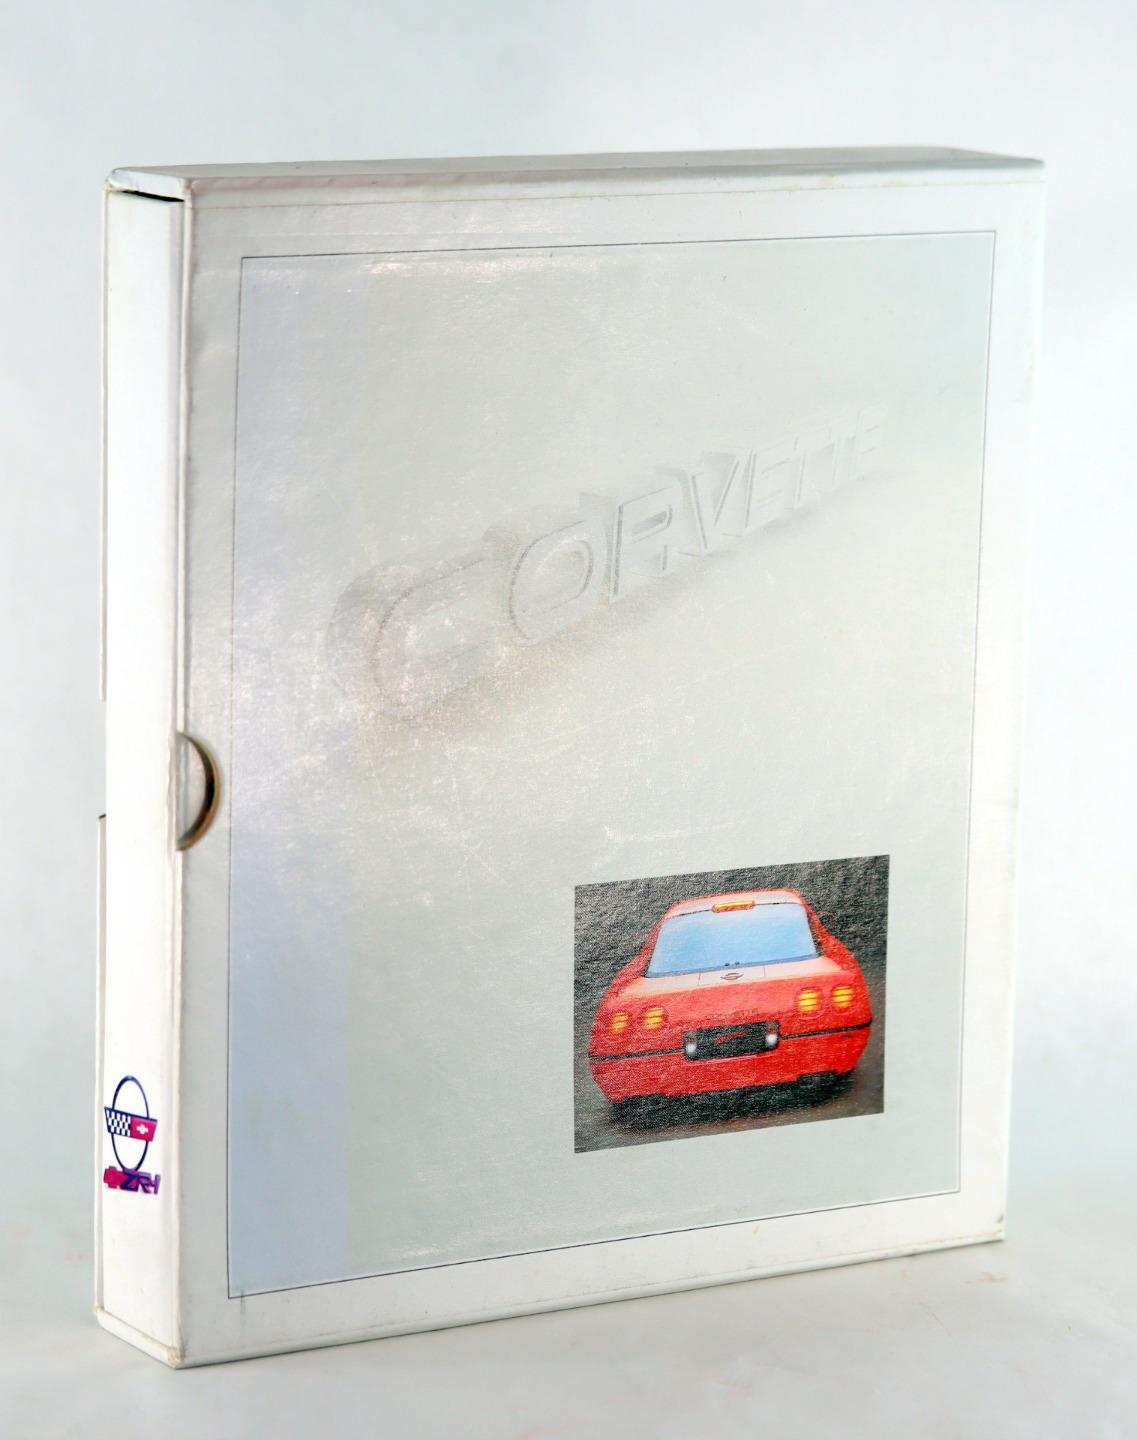 1989 Chevrolet Corvette ZR-1 LT-5 Media Geneva Press Kit w/Slides Carcassonne